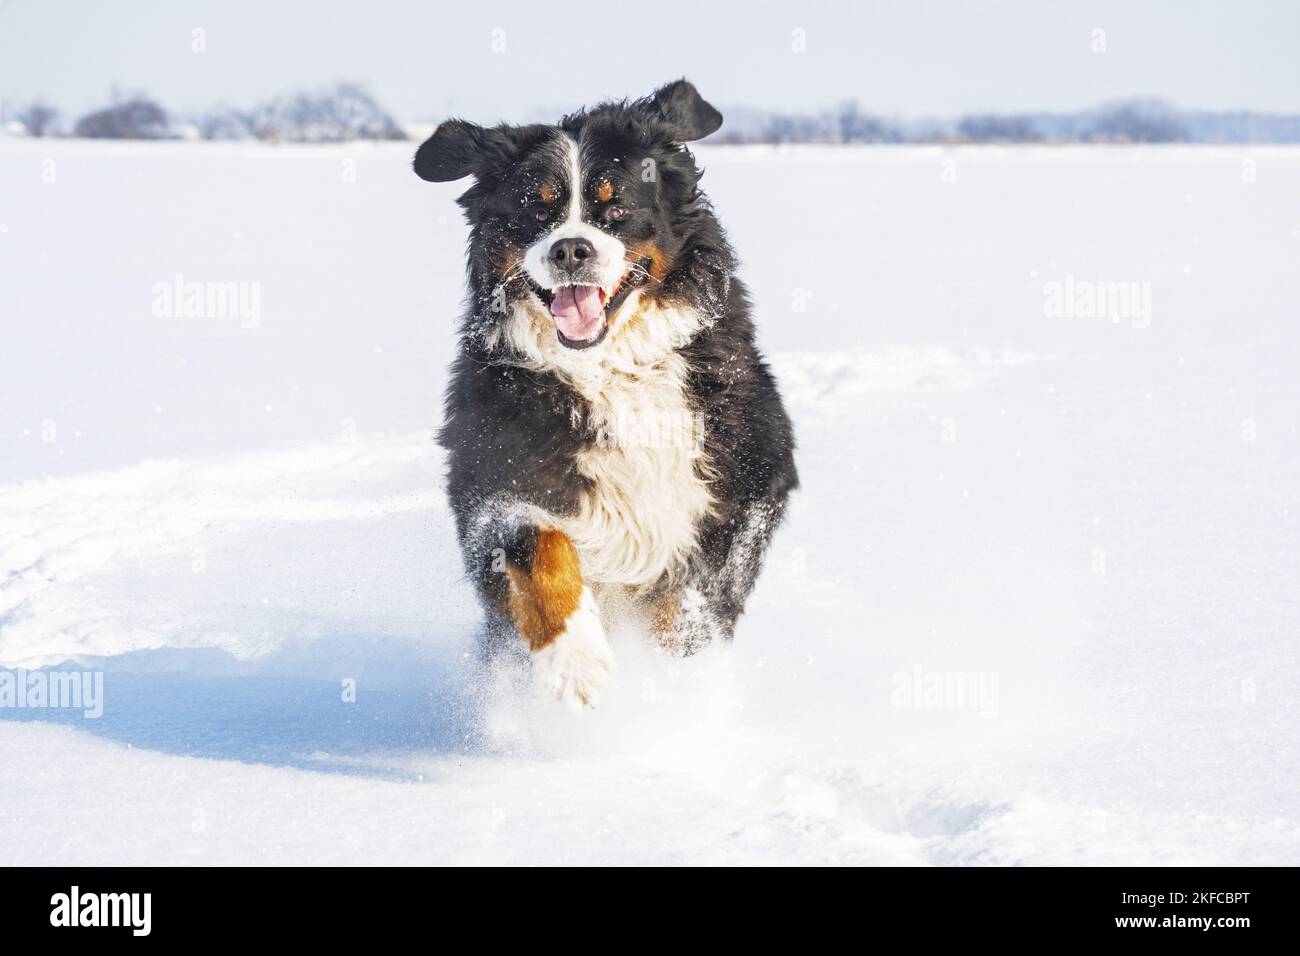 Bernese mountain dog runs through the snow Stock Photo